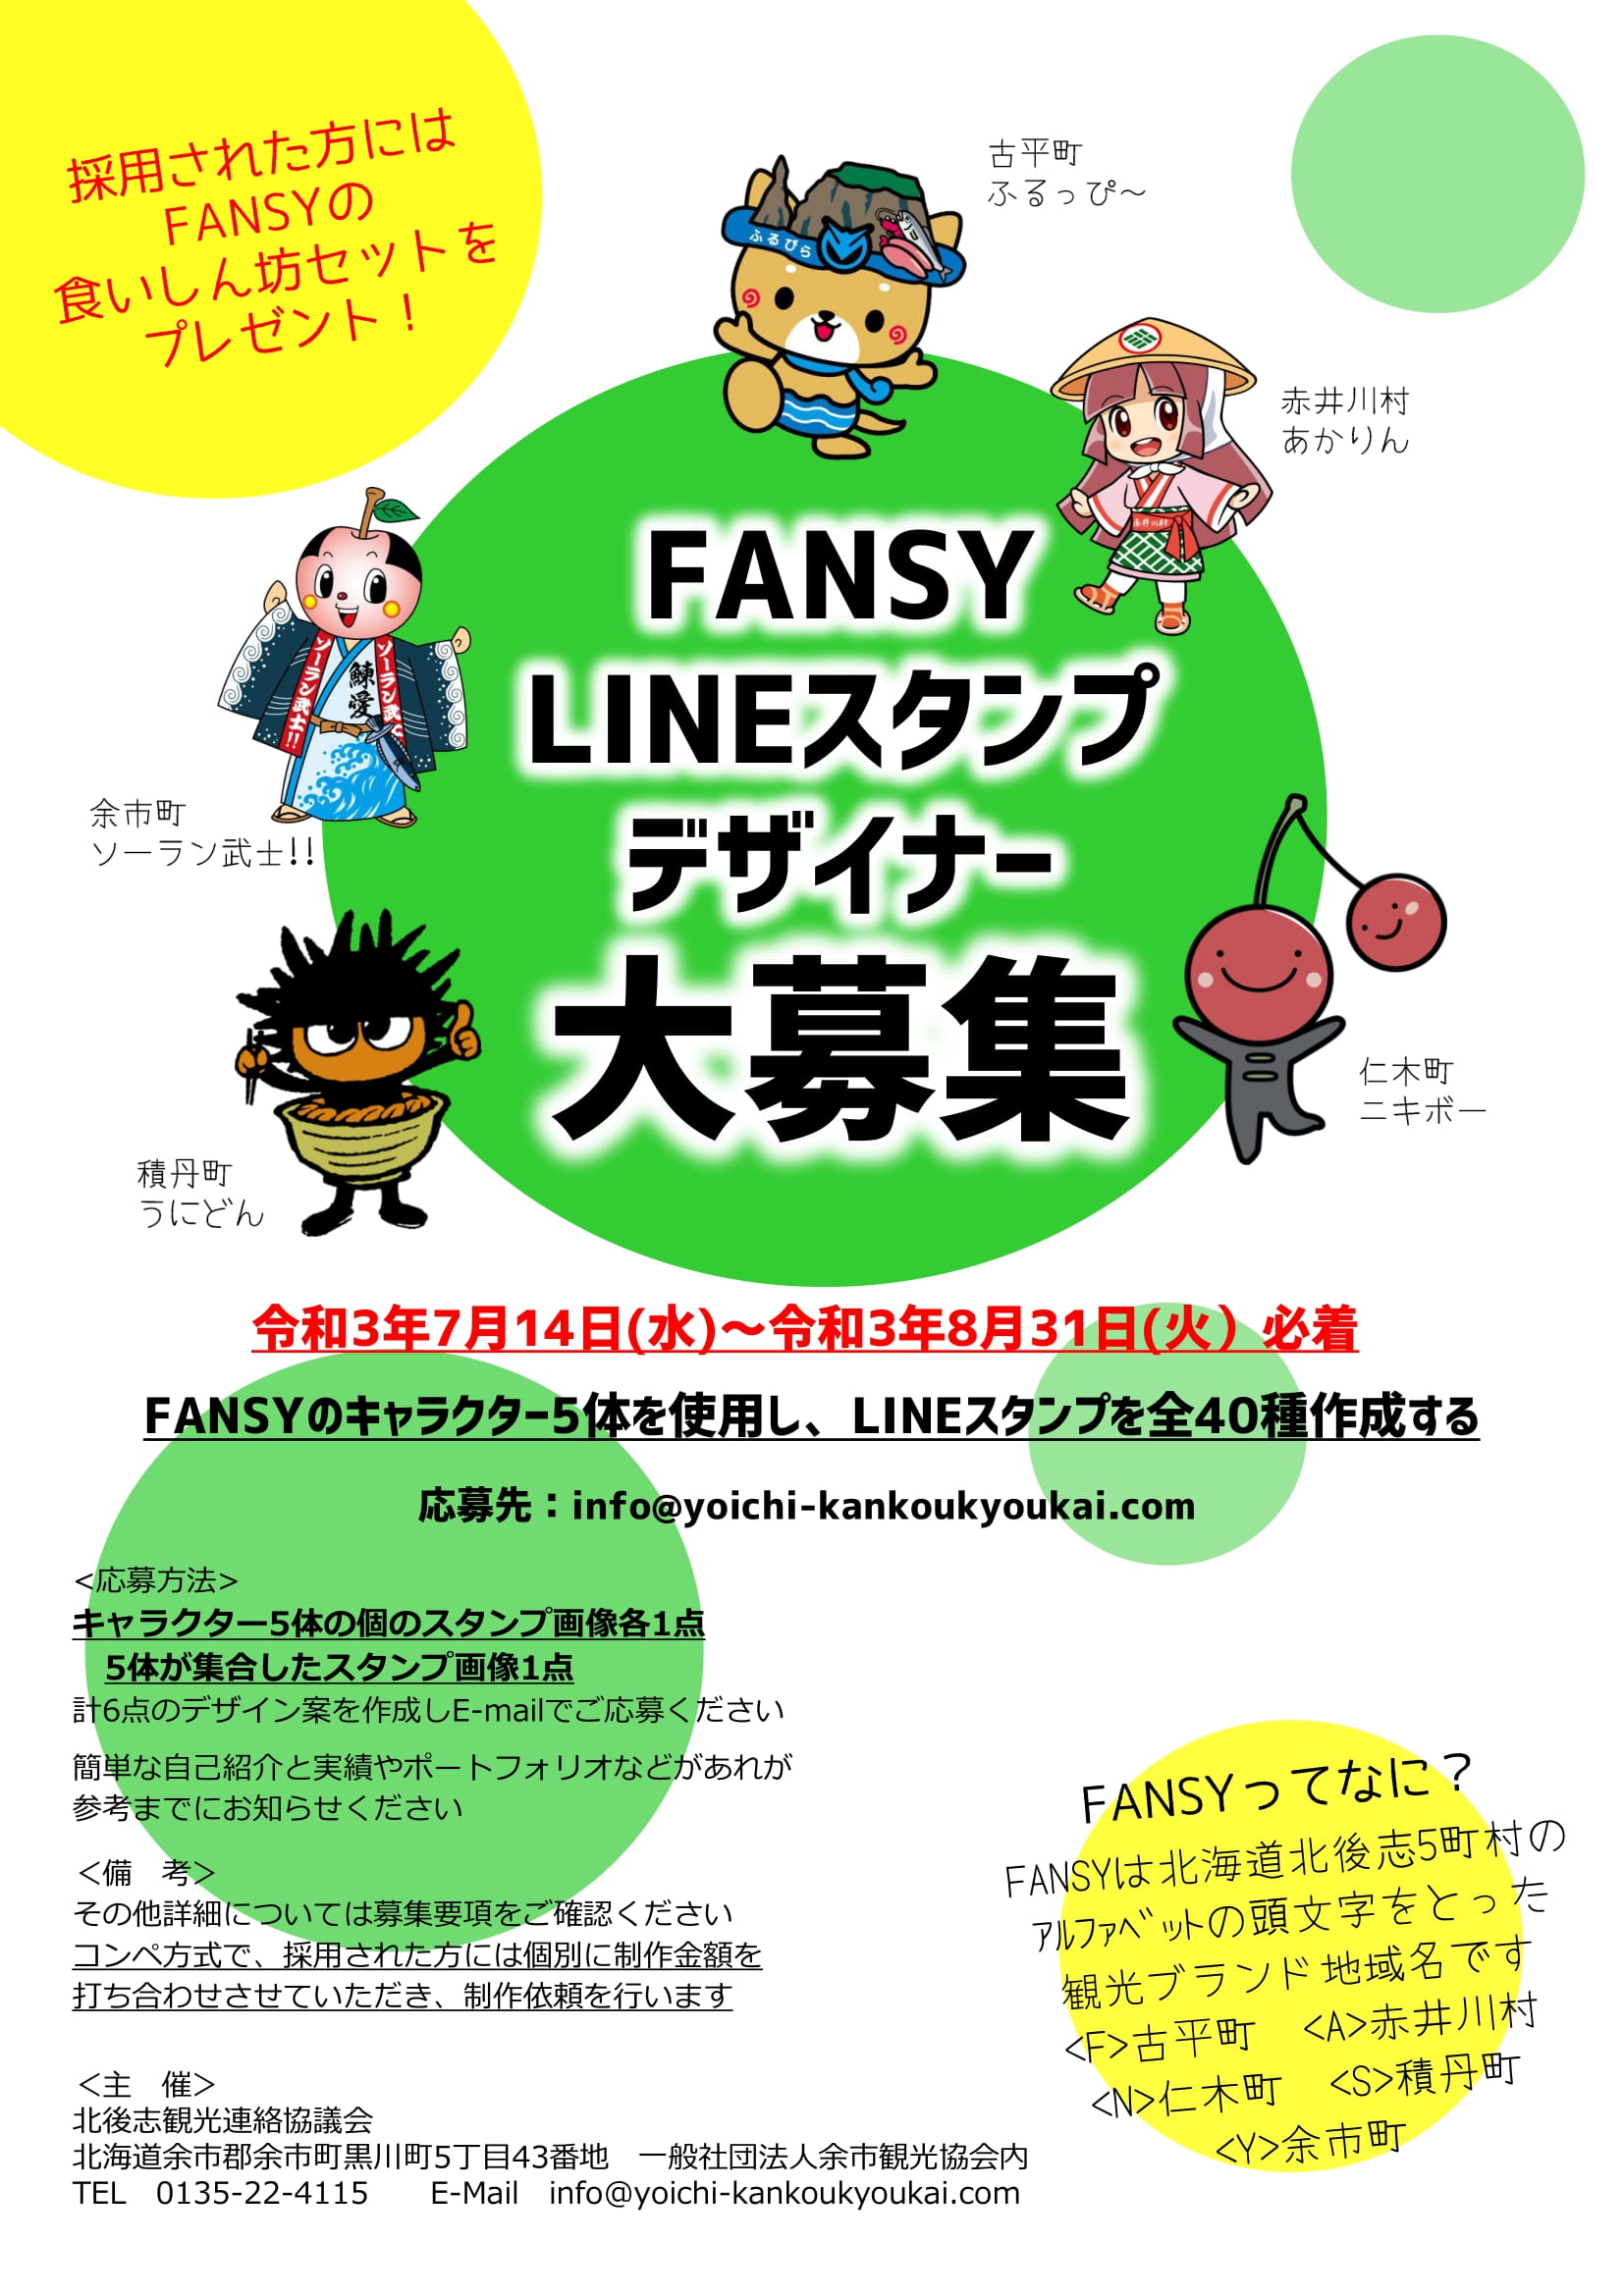 Fansy Lineスタンプデザイナー募集 積丹観光協会